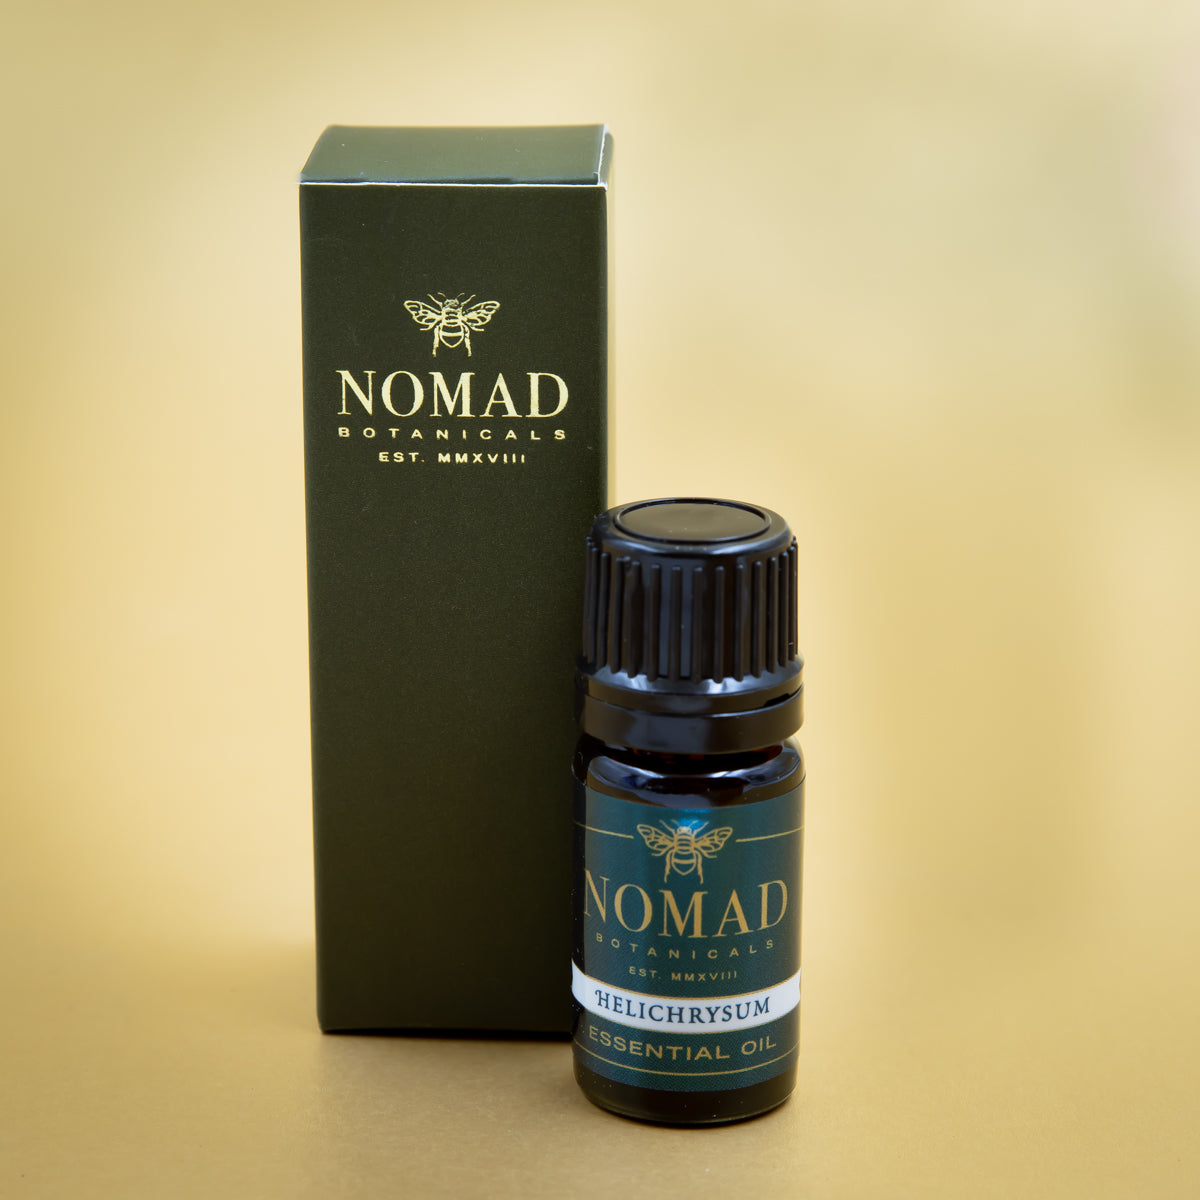 Nomad Botanicals Essential Oils